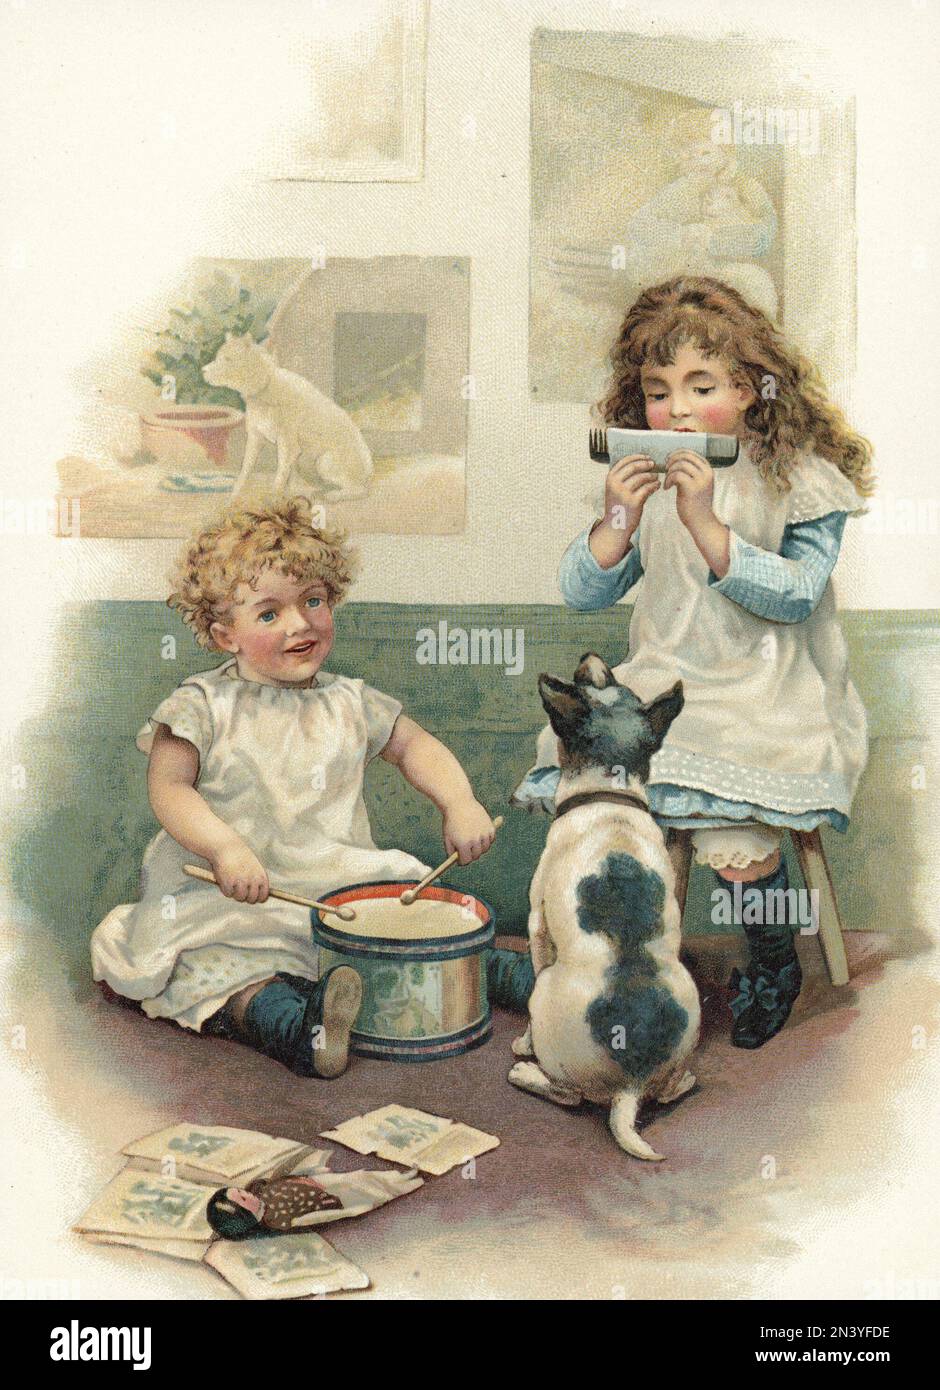 Dos niños jugando para su perro en esta ilustración del cambio de siglo 1800-1900. La chica de la derecha juega un peine por tener un pedazo de papel que ella sopla. Foto de stock